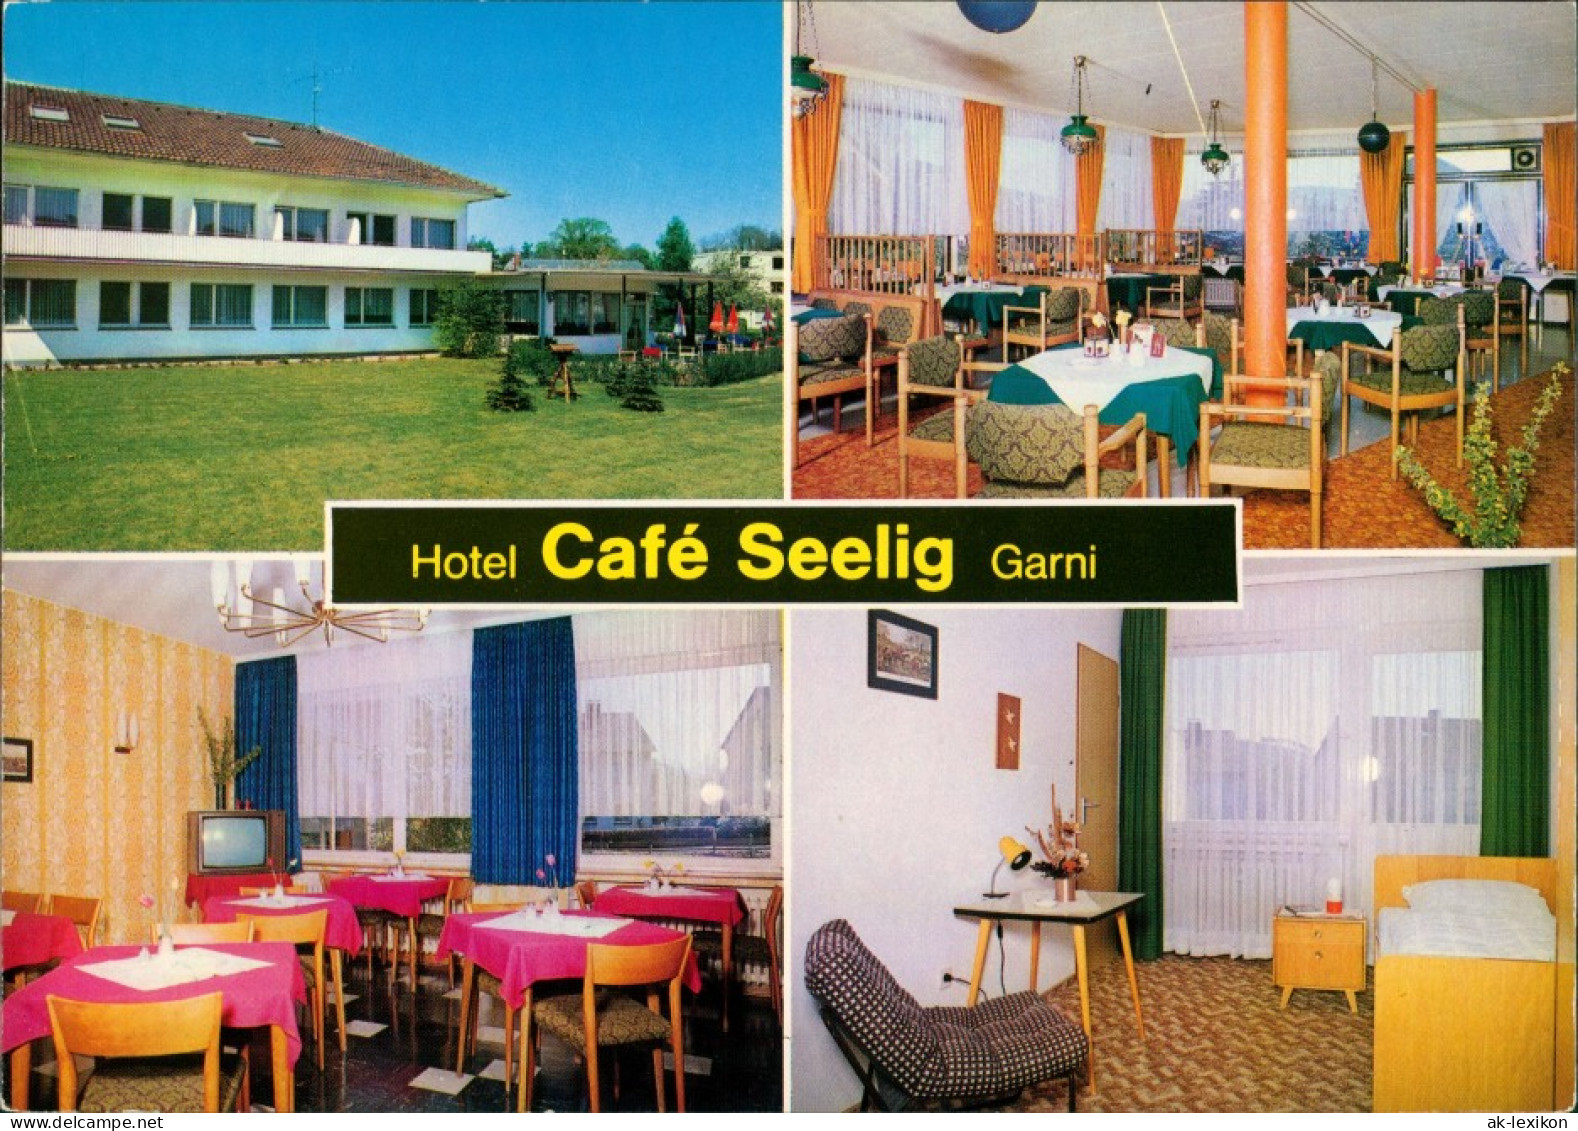 Bad Driburg Hotel Cafe Seelig Garni Mühlenstrasse Innen & Außen 1980 - Bad Driburg